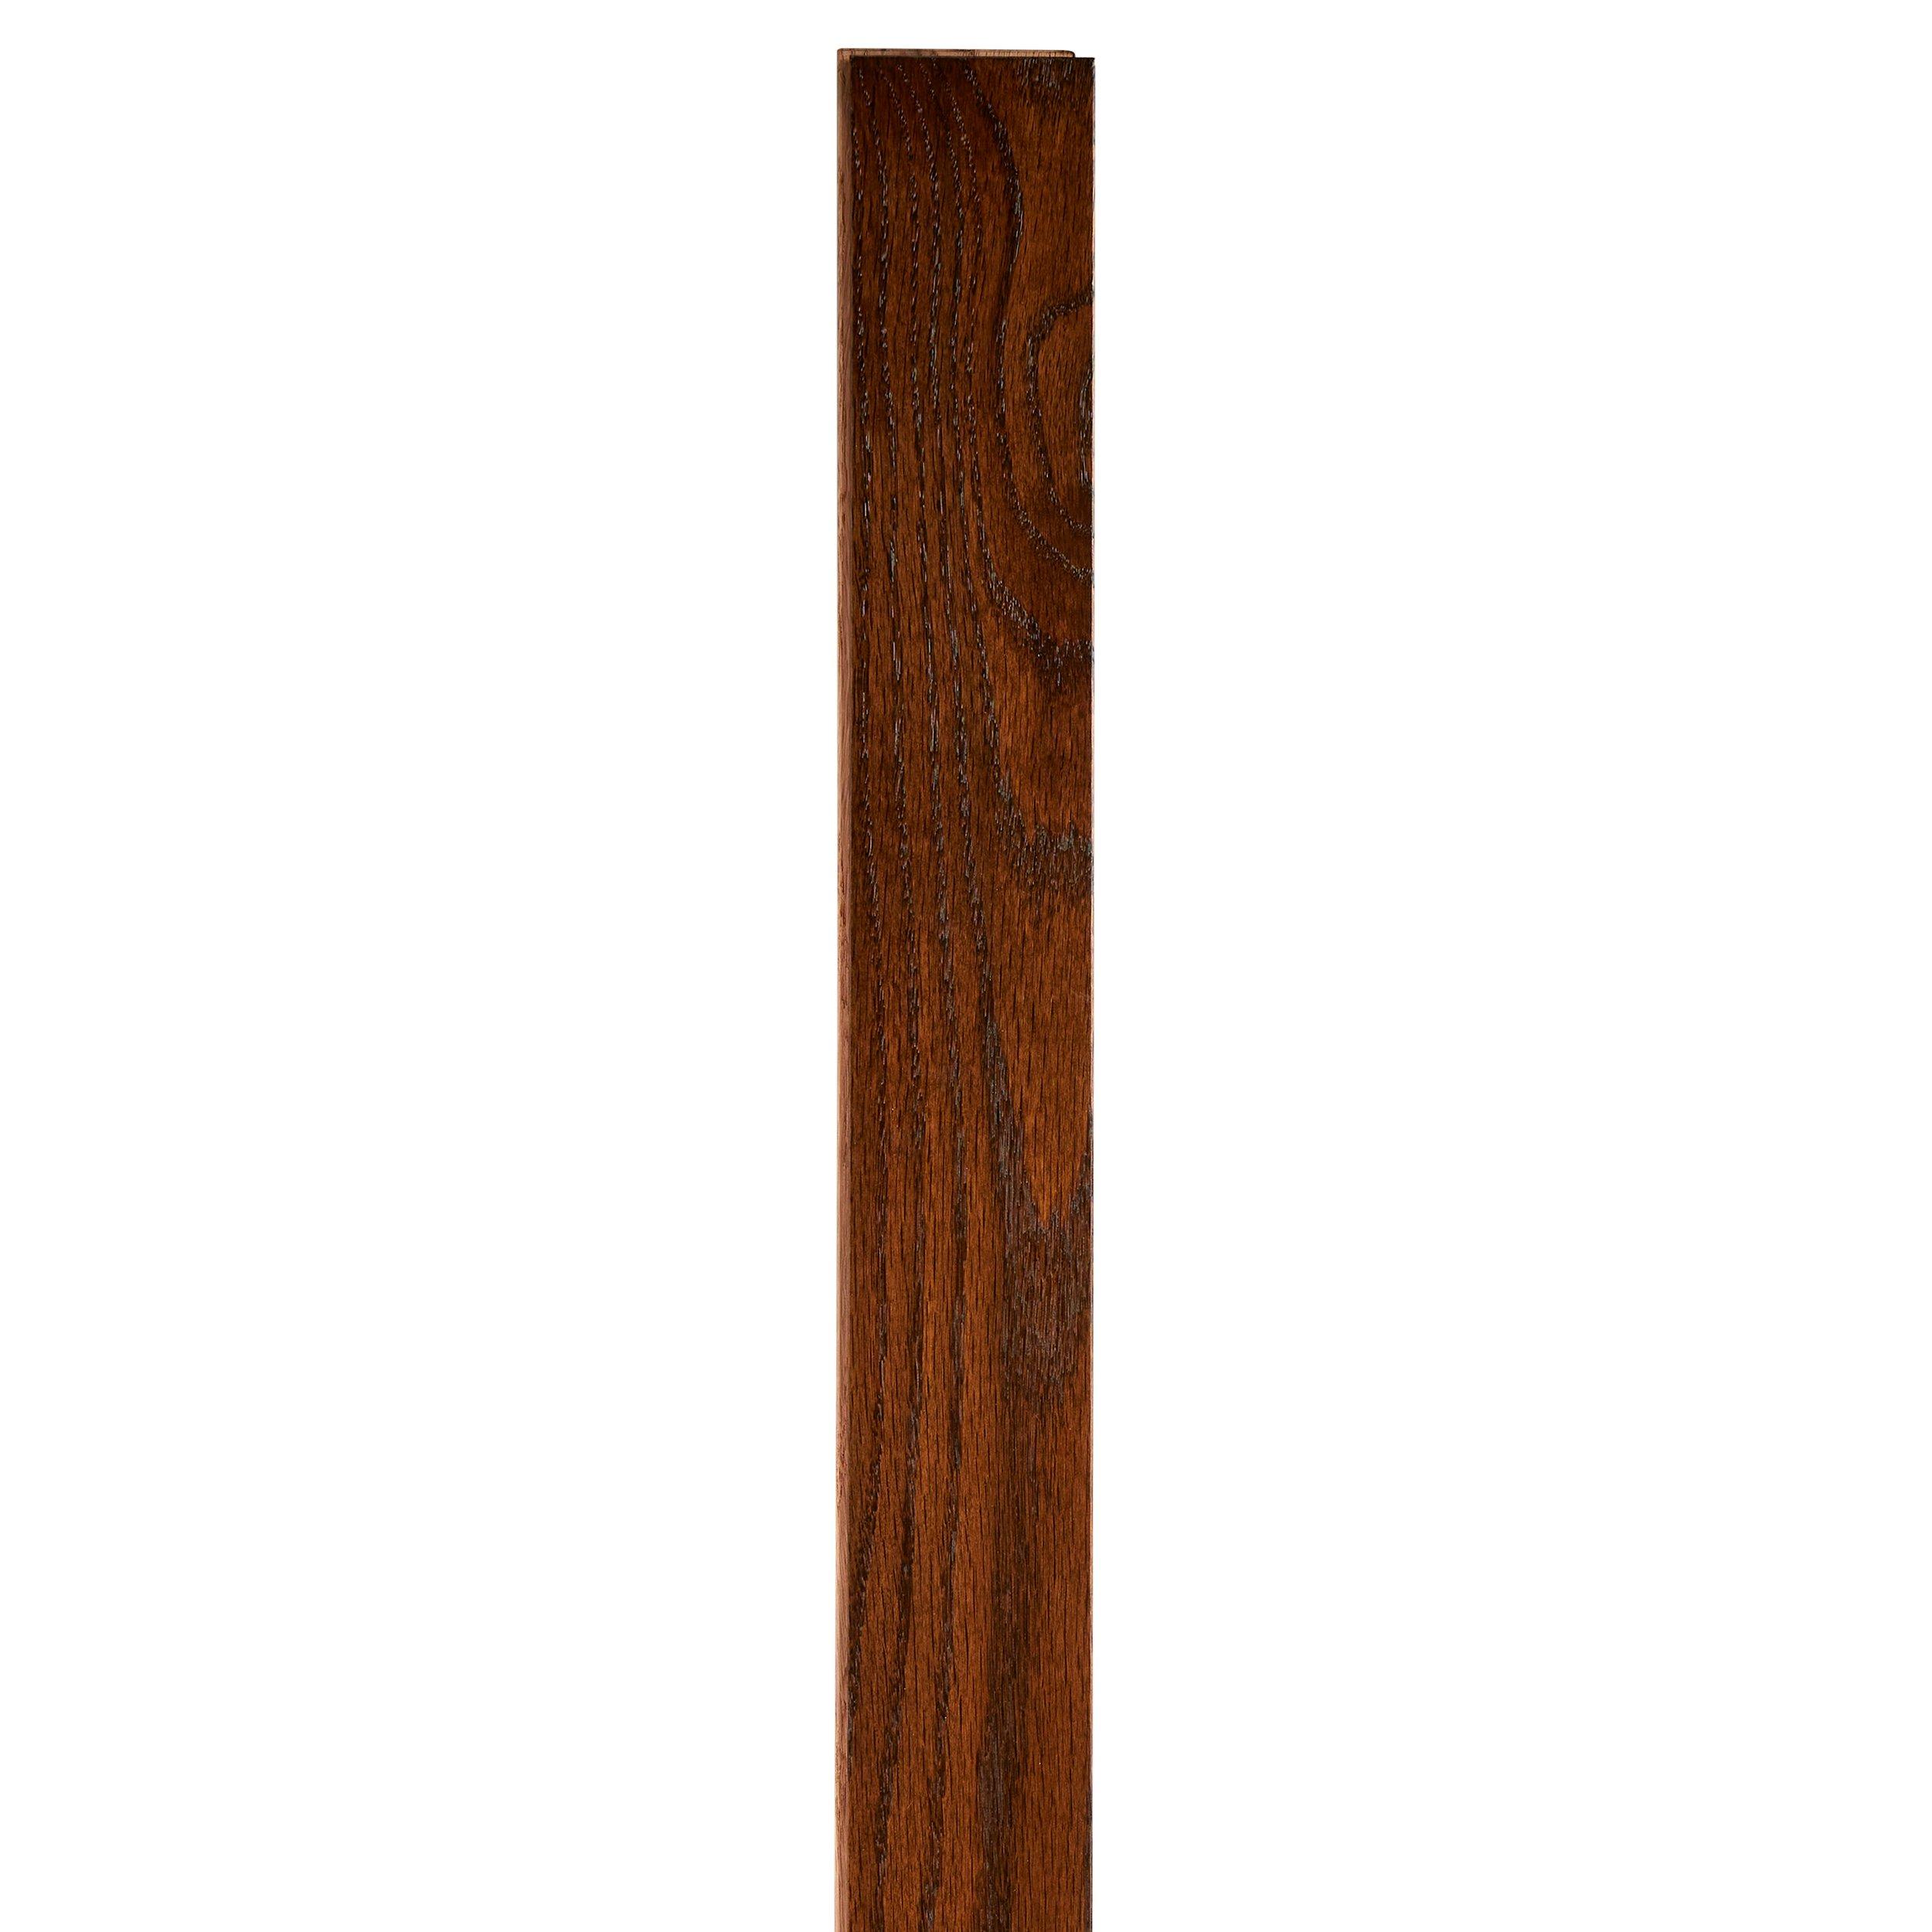 Sierra Red Oak Smooth Solid Hardwood